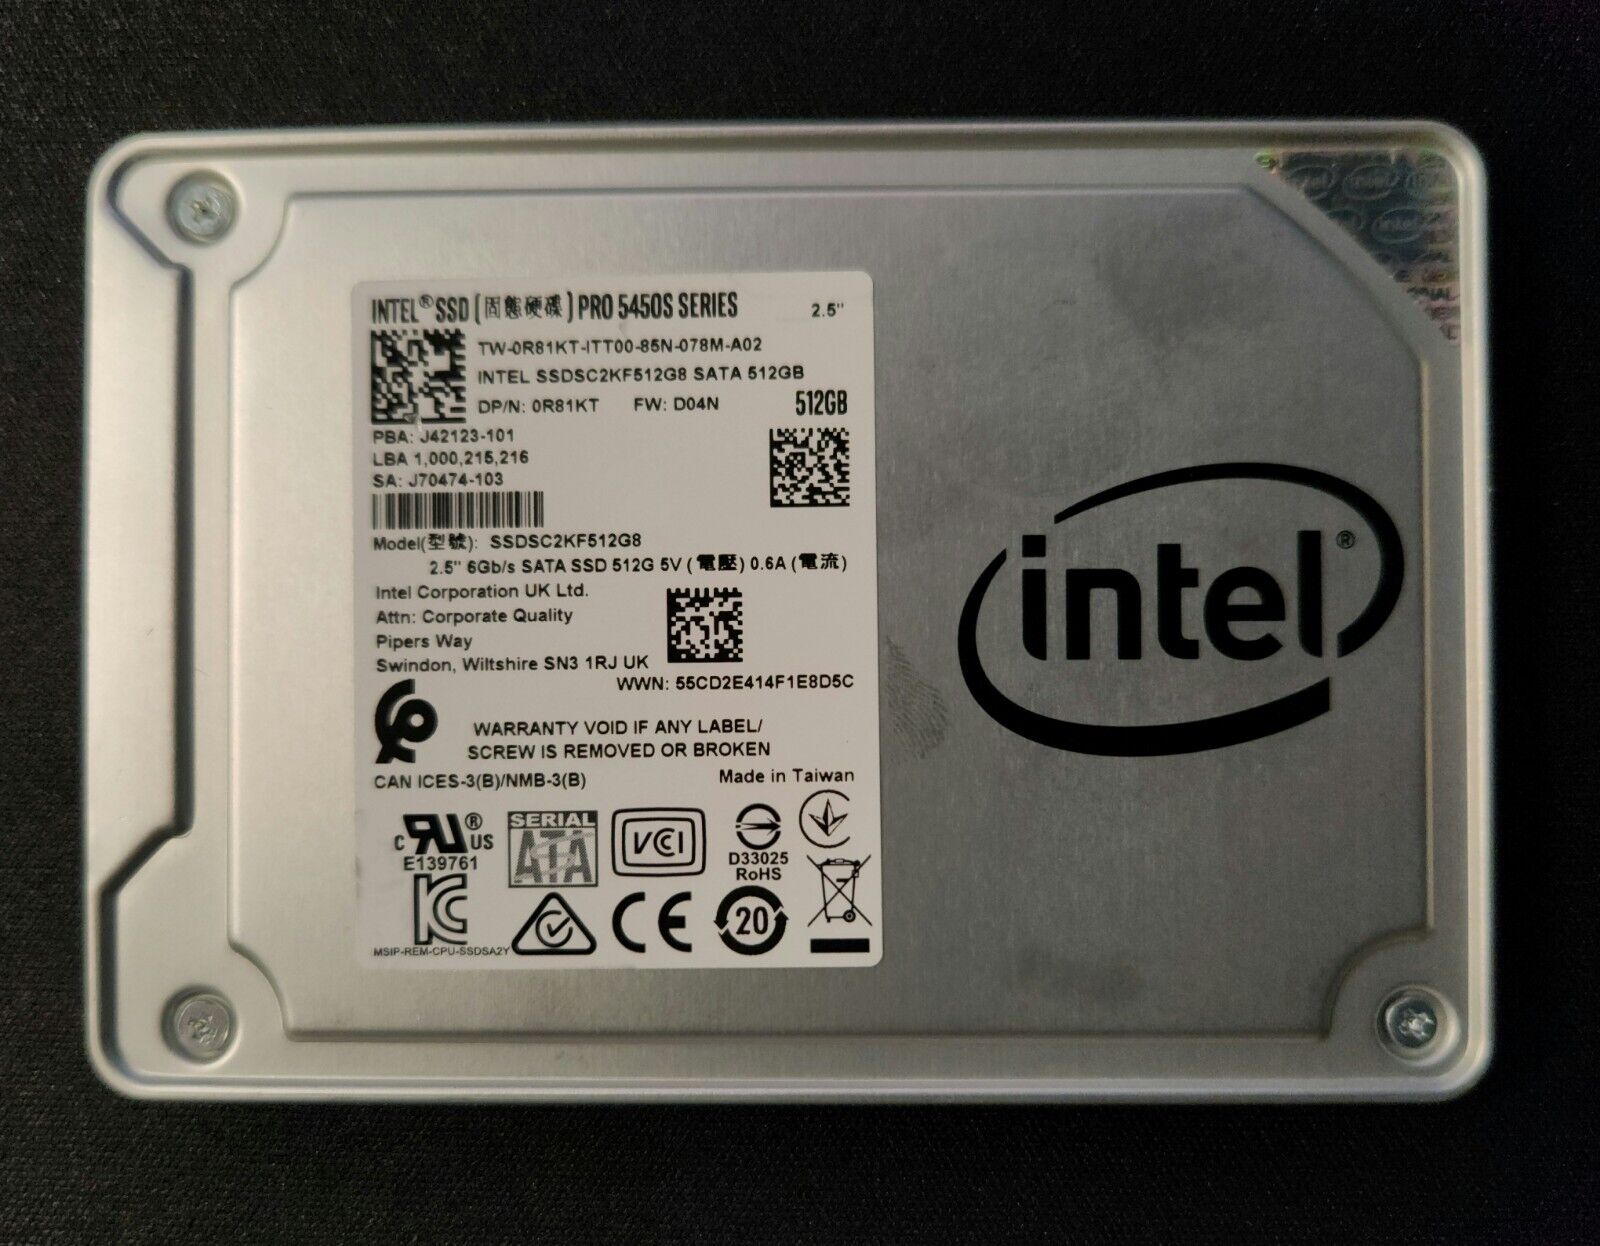 Intel SSD Pro 5450s Series SSDSC2KF512GB 0R81KT 512GB 2.5\